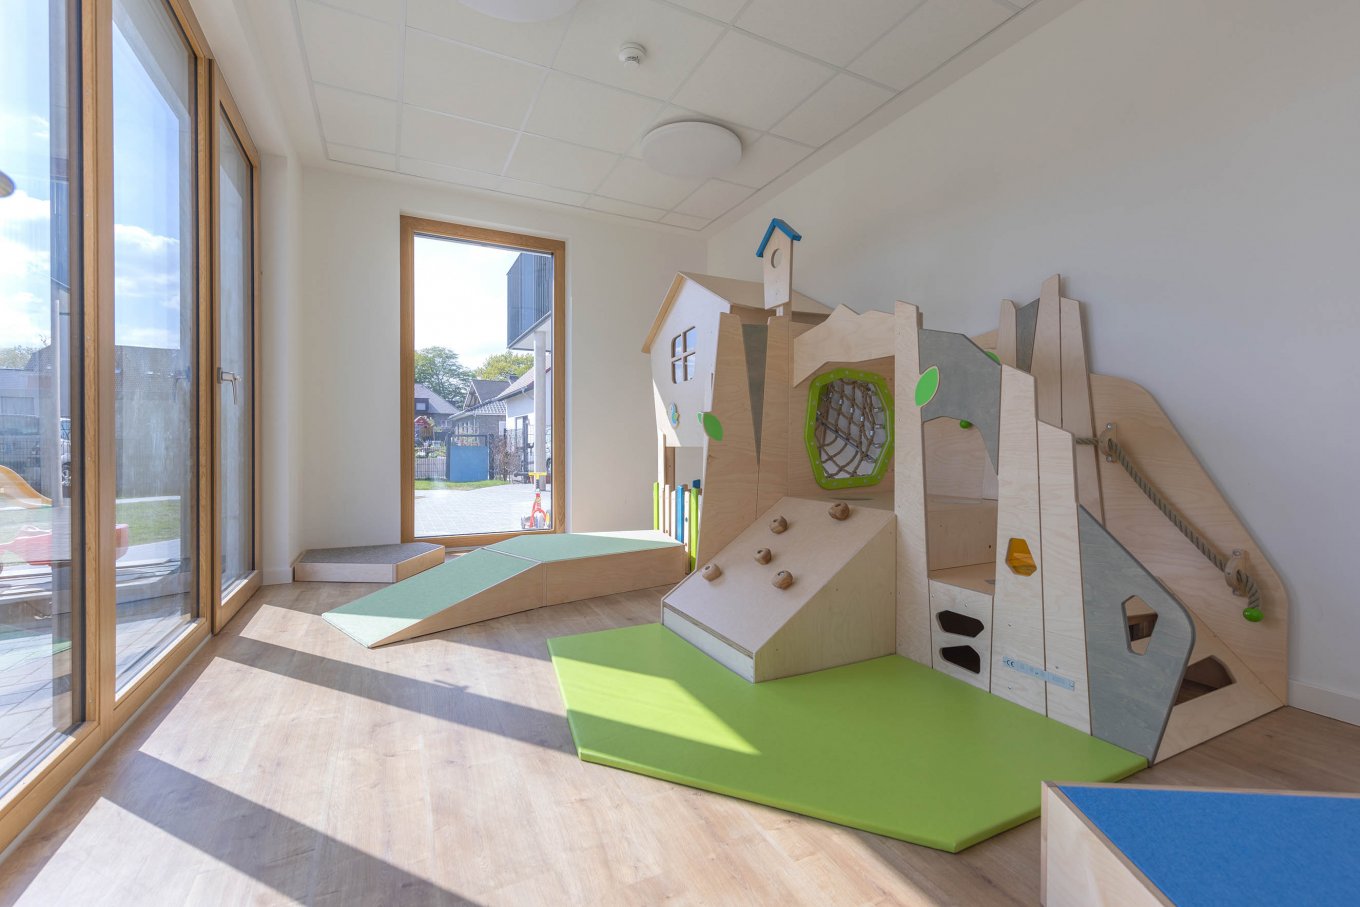 wineo PURLINE Bioboden in Kindergarten Bodenbelag Holzoptik Fußboden Spielgerät bodentiefe Fenster moderne Einrichtung